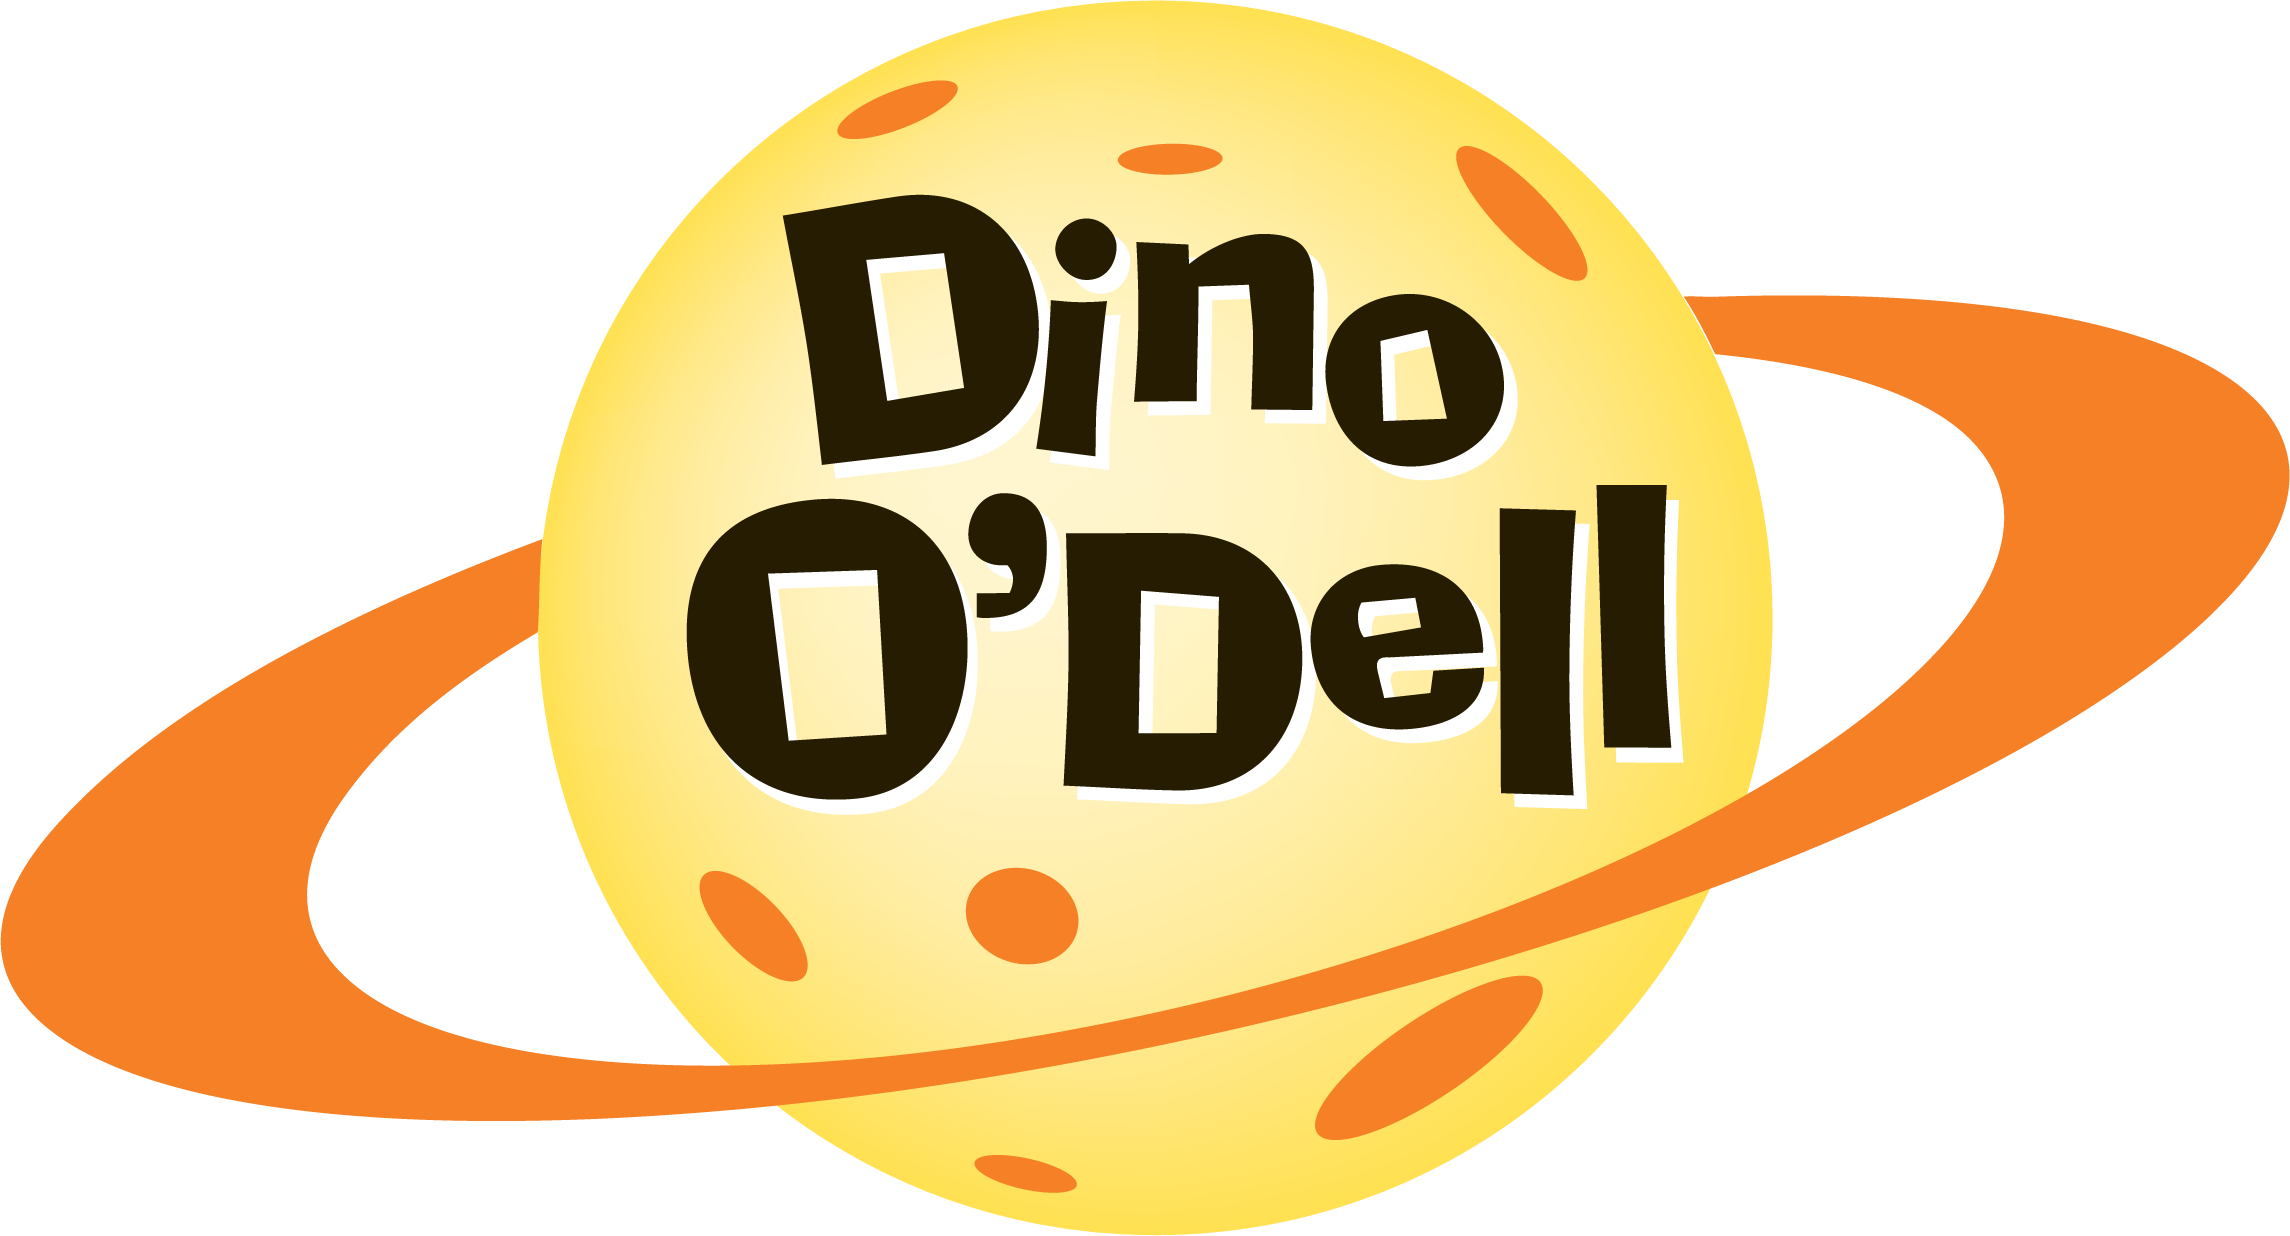 Dino O'dell - Dino O Dell (2290x1236)